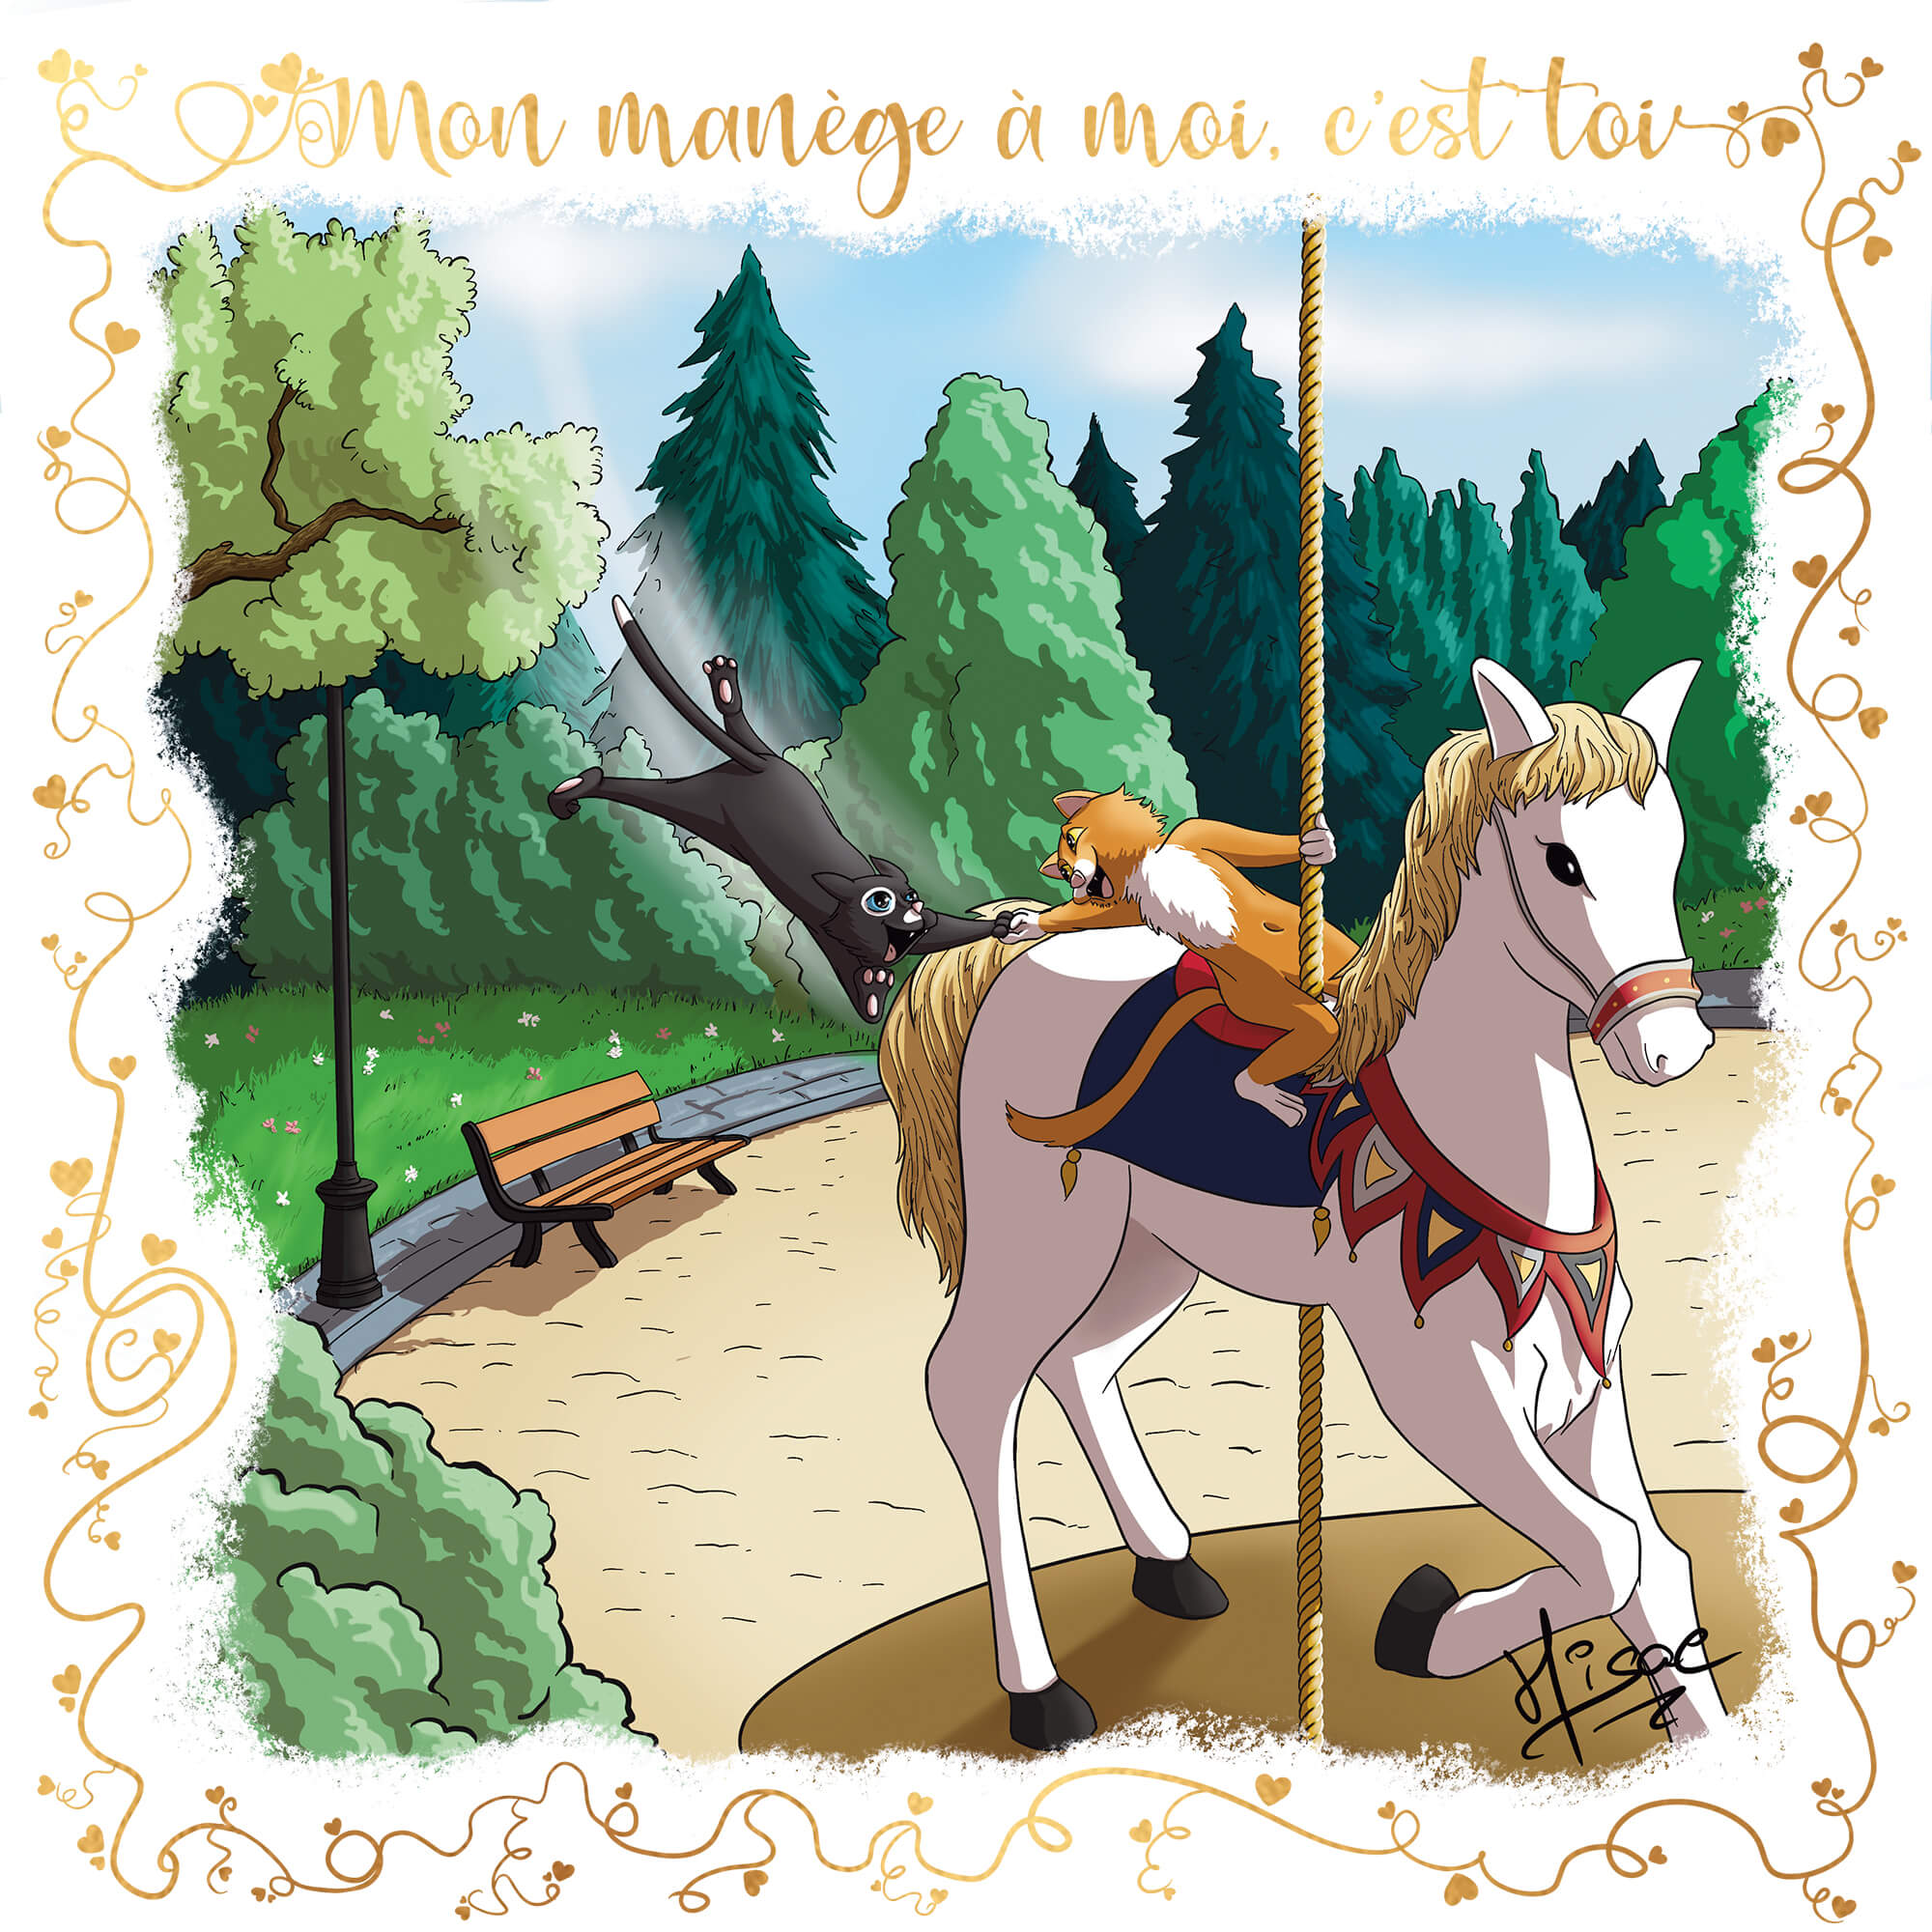 Dessin numérique format carte postale pour la Saint-valentin représentant un chat sur un cheval de bois qui attrape un autre chat par la main ©Hisae illustrations